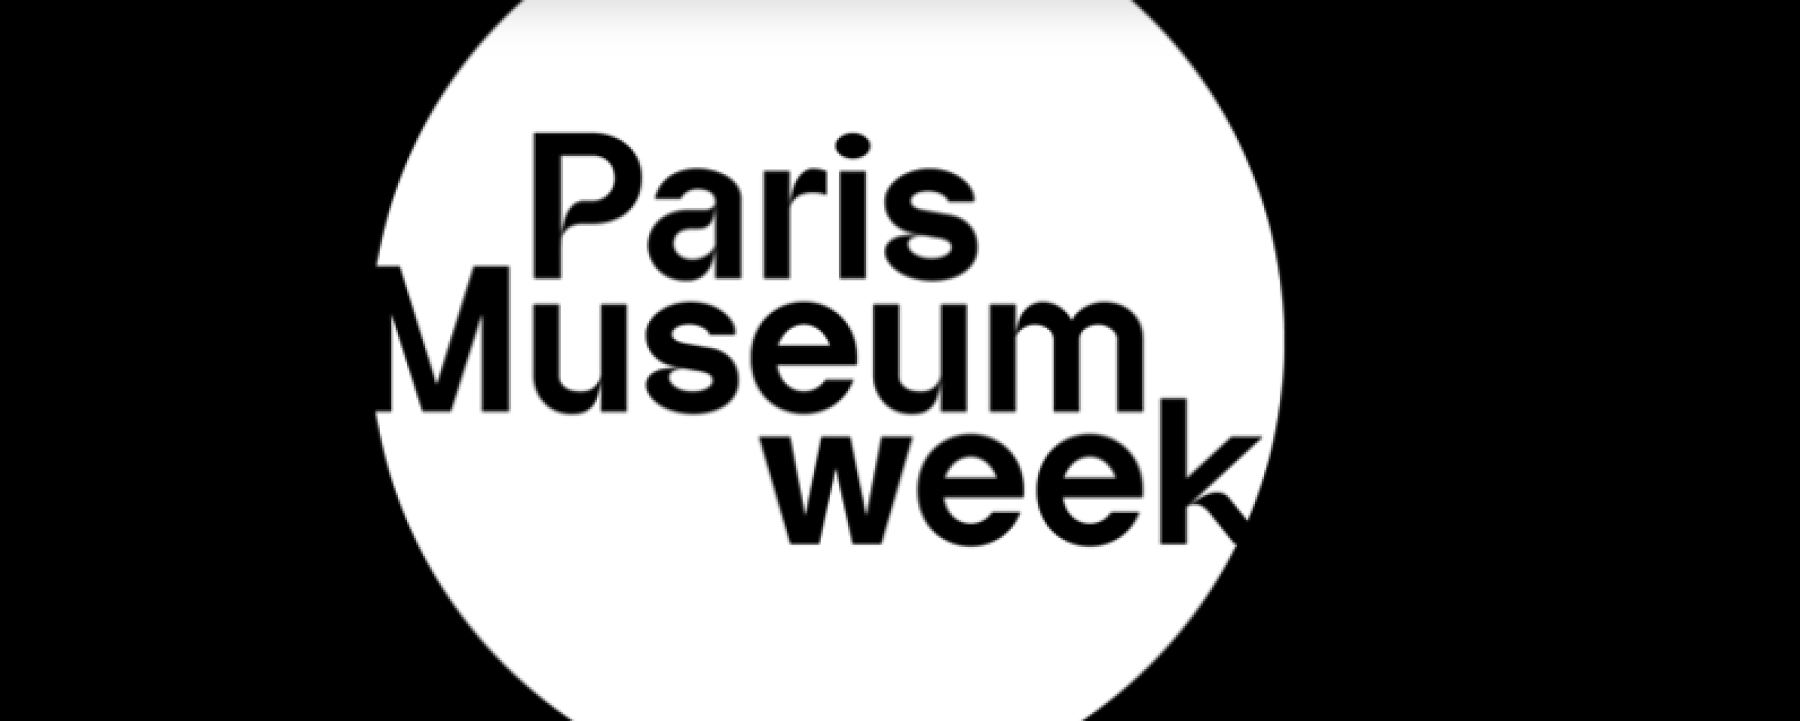 Paris Museum Week